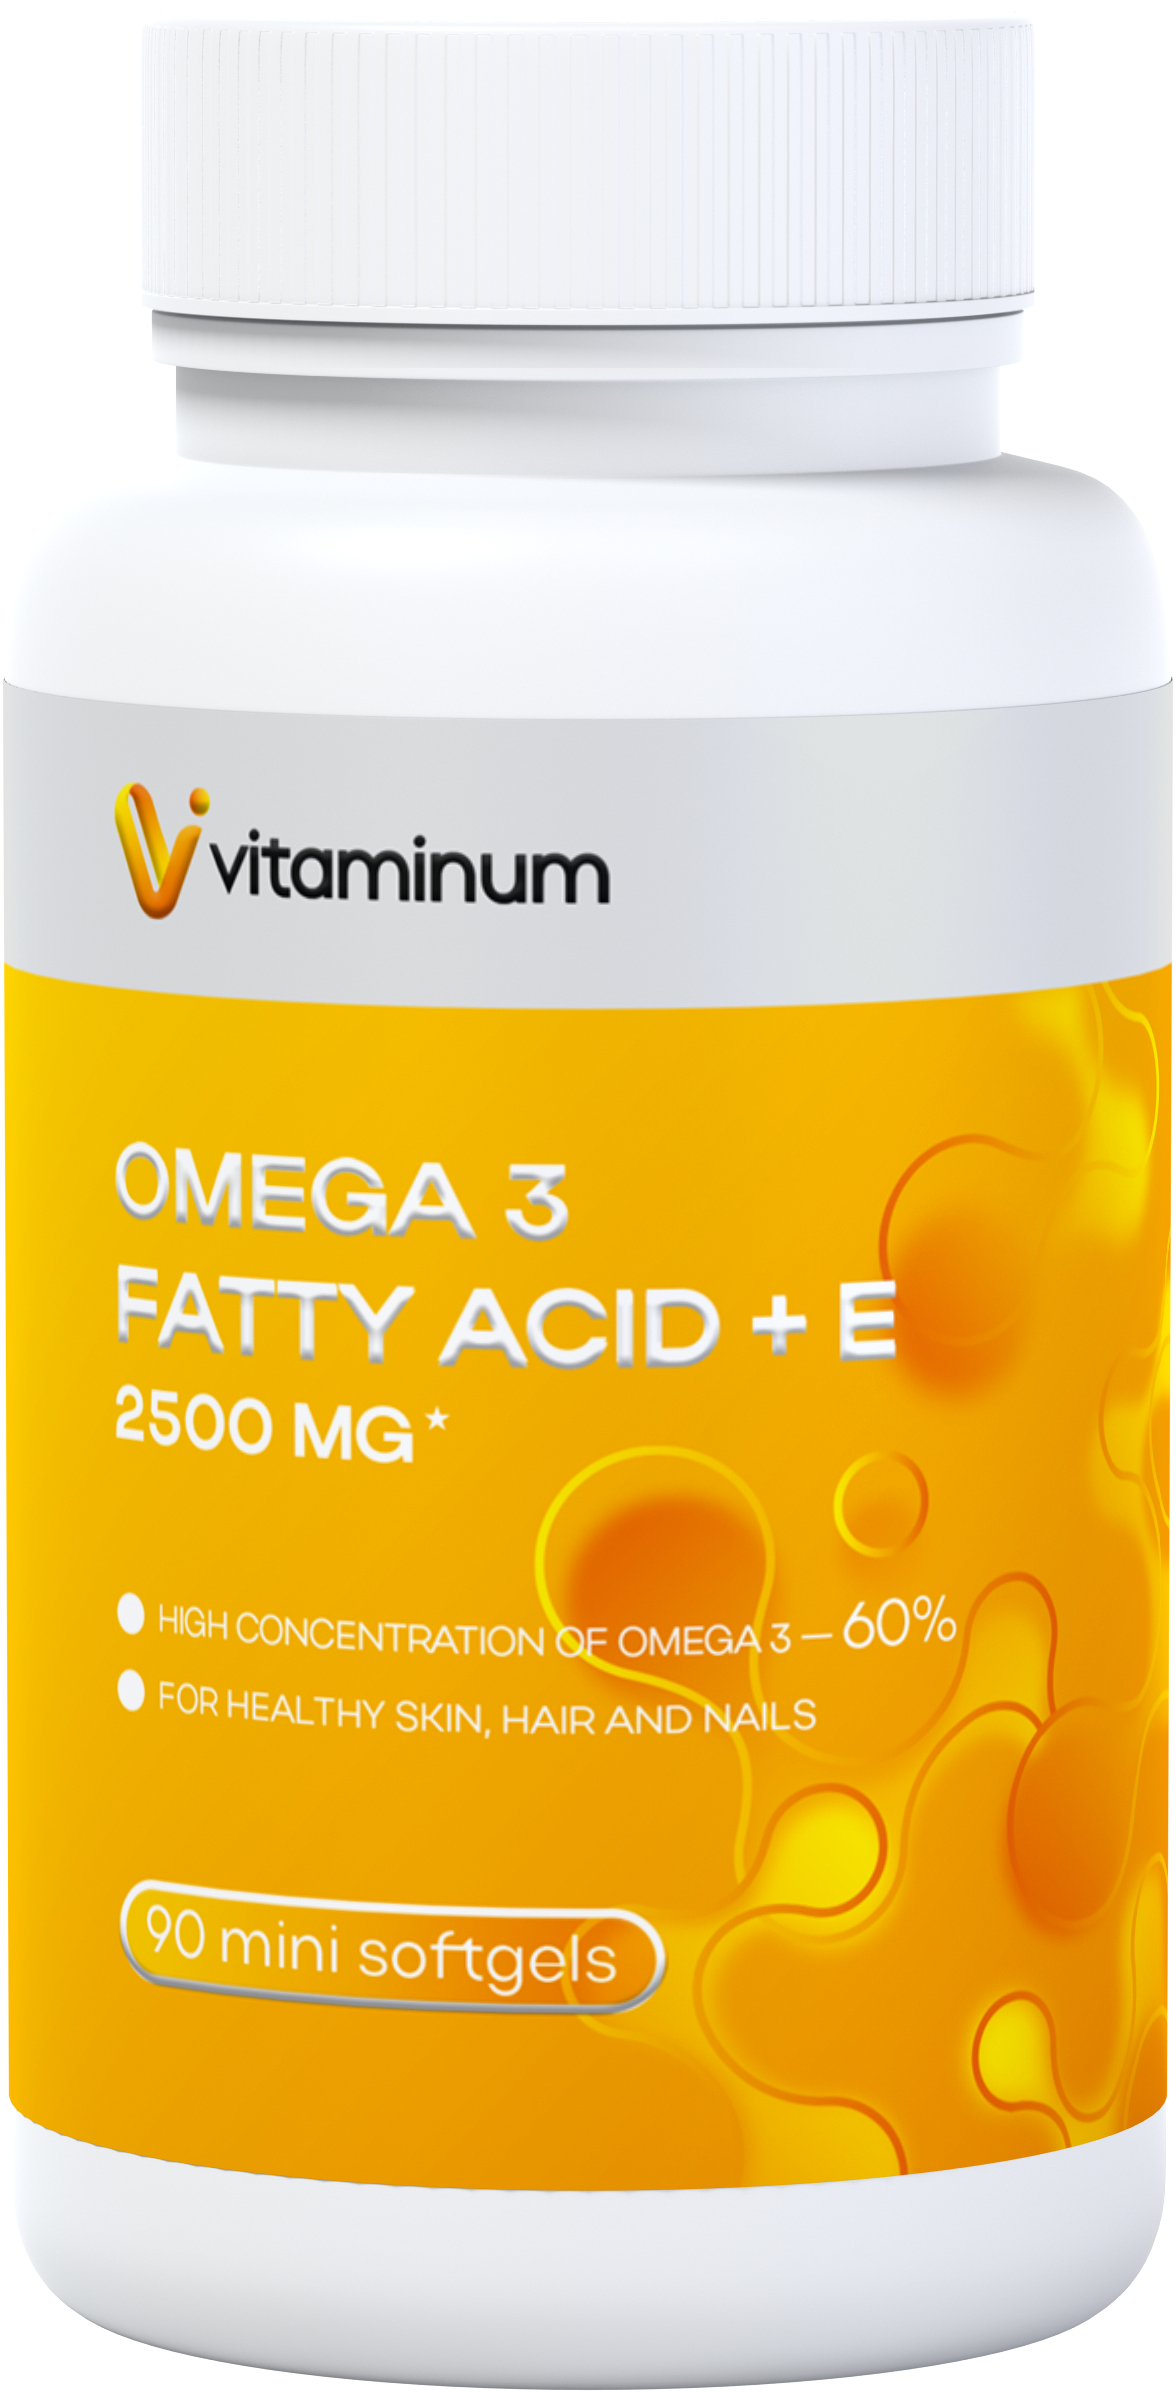  Vitaminum ОМЕГА 3 60% + витамин Е (2500 MG*) 90 капсул 700 мг   в Самаре